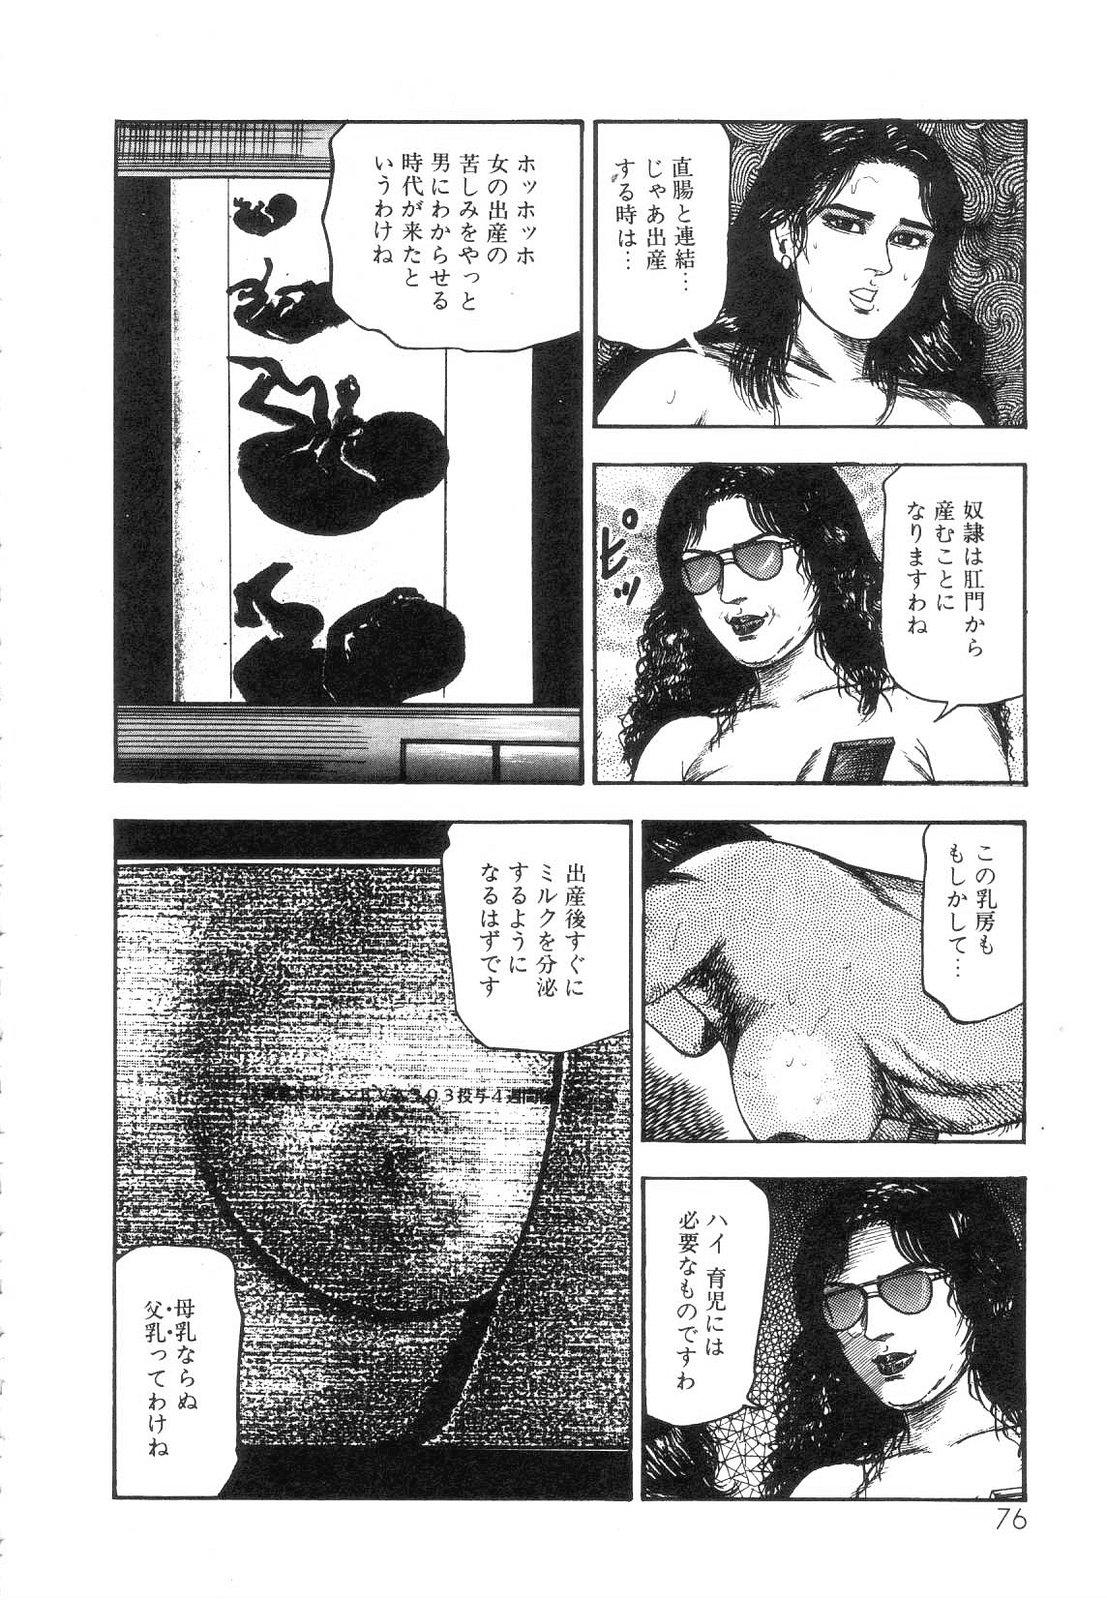 Shiro no Mokushiroku Vol. 5 - Ninshoujo Erika no Shou 77